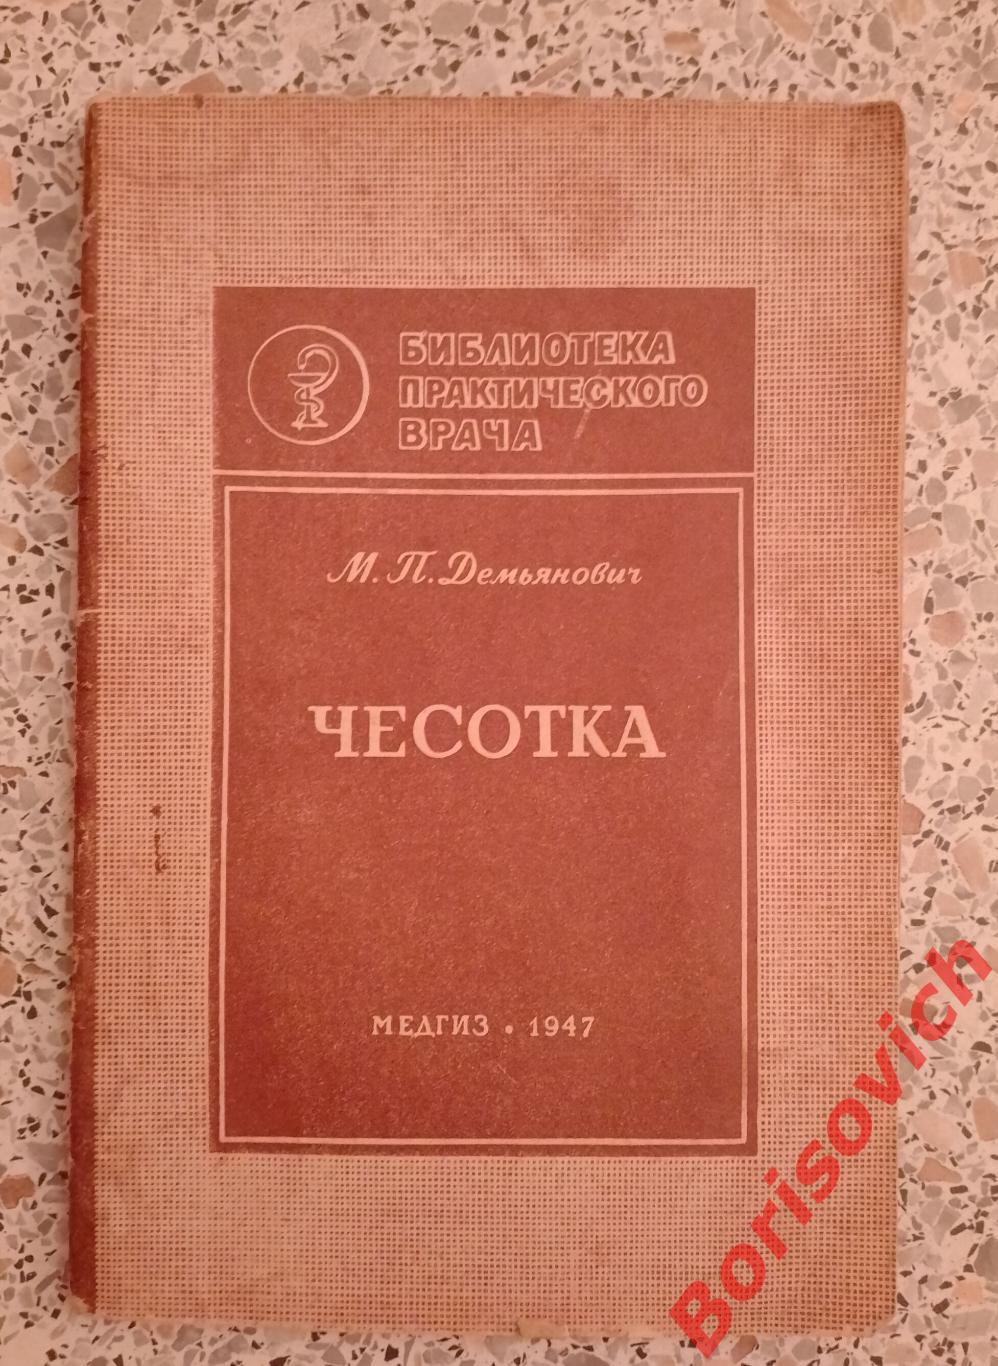 М. П. Демьянович ЧЕСОТКА медгиз 1947 г